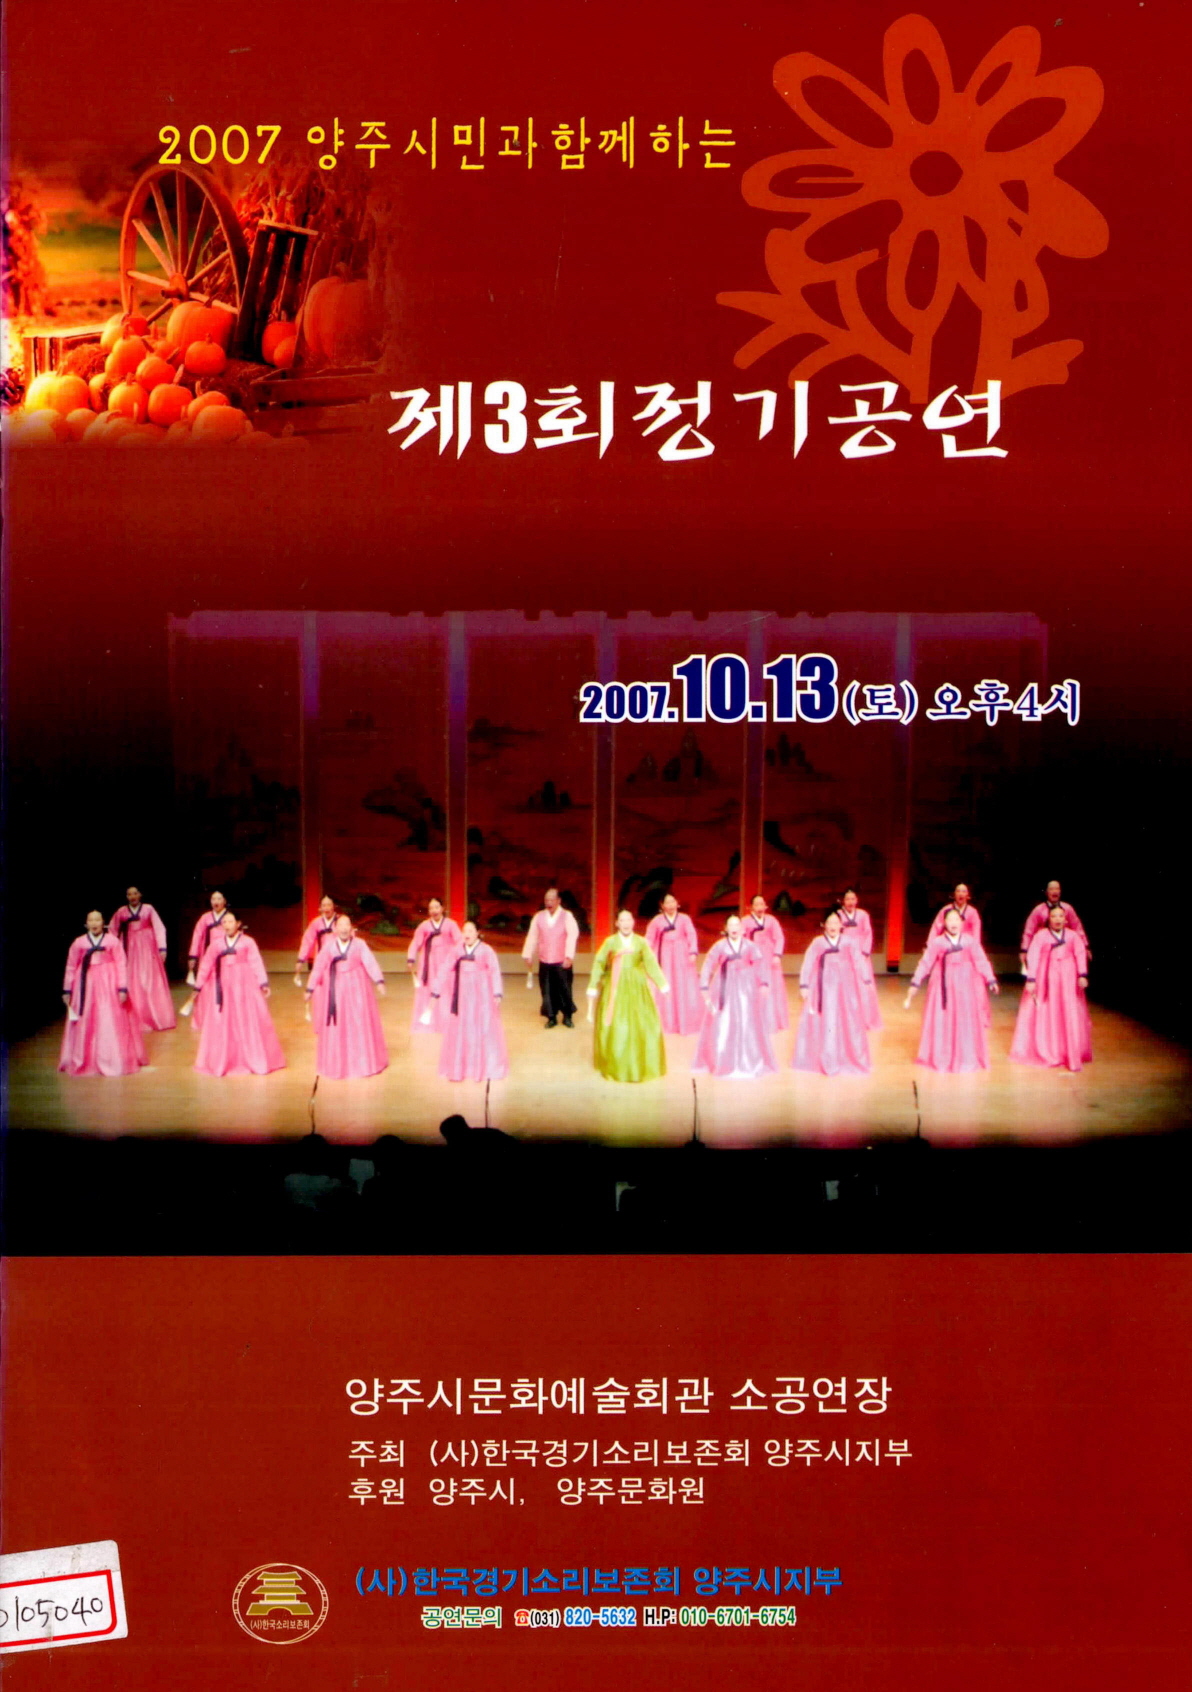 2007 양주시민과 함께하는 제3회정기공연